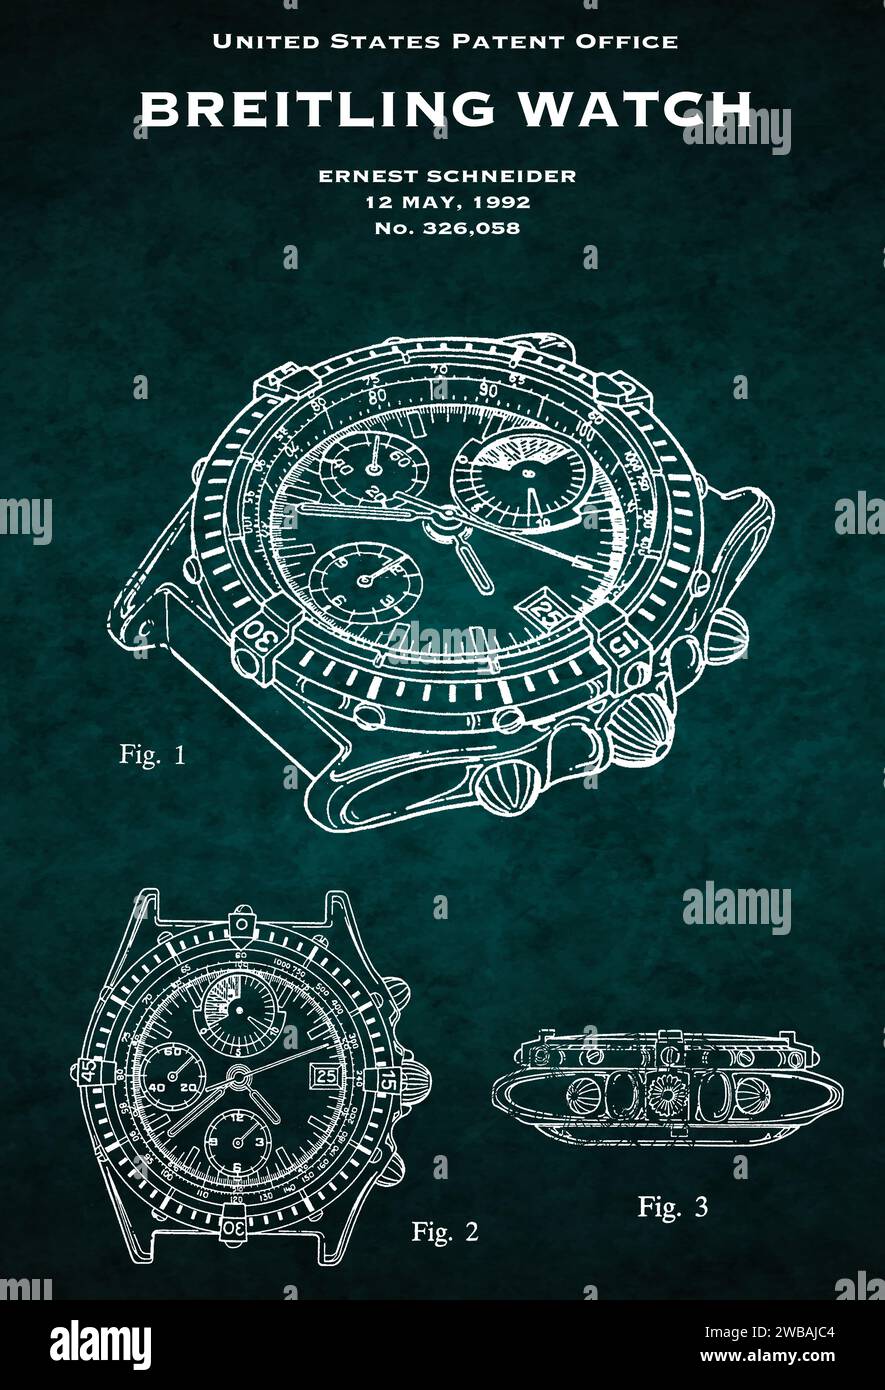 US-Patentamt Design von 1992 einer Breitling-Uhr auf grünem Hintergrund Stockfoto